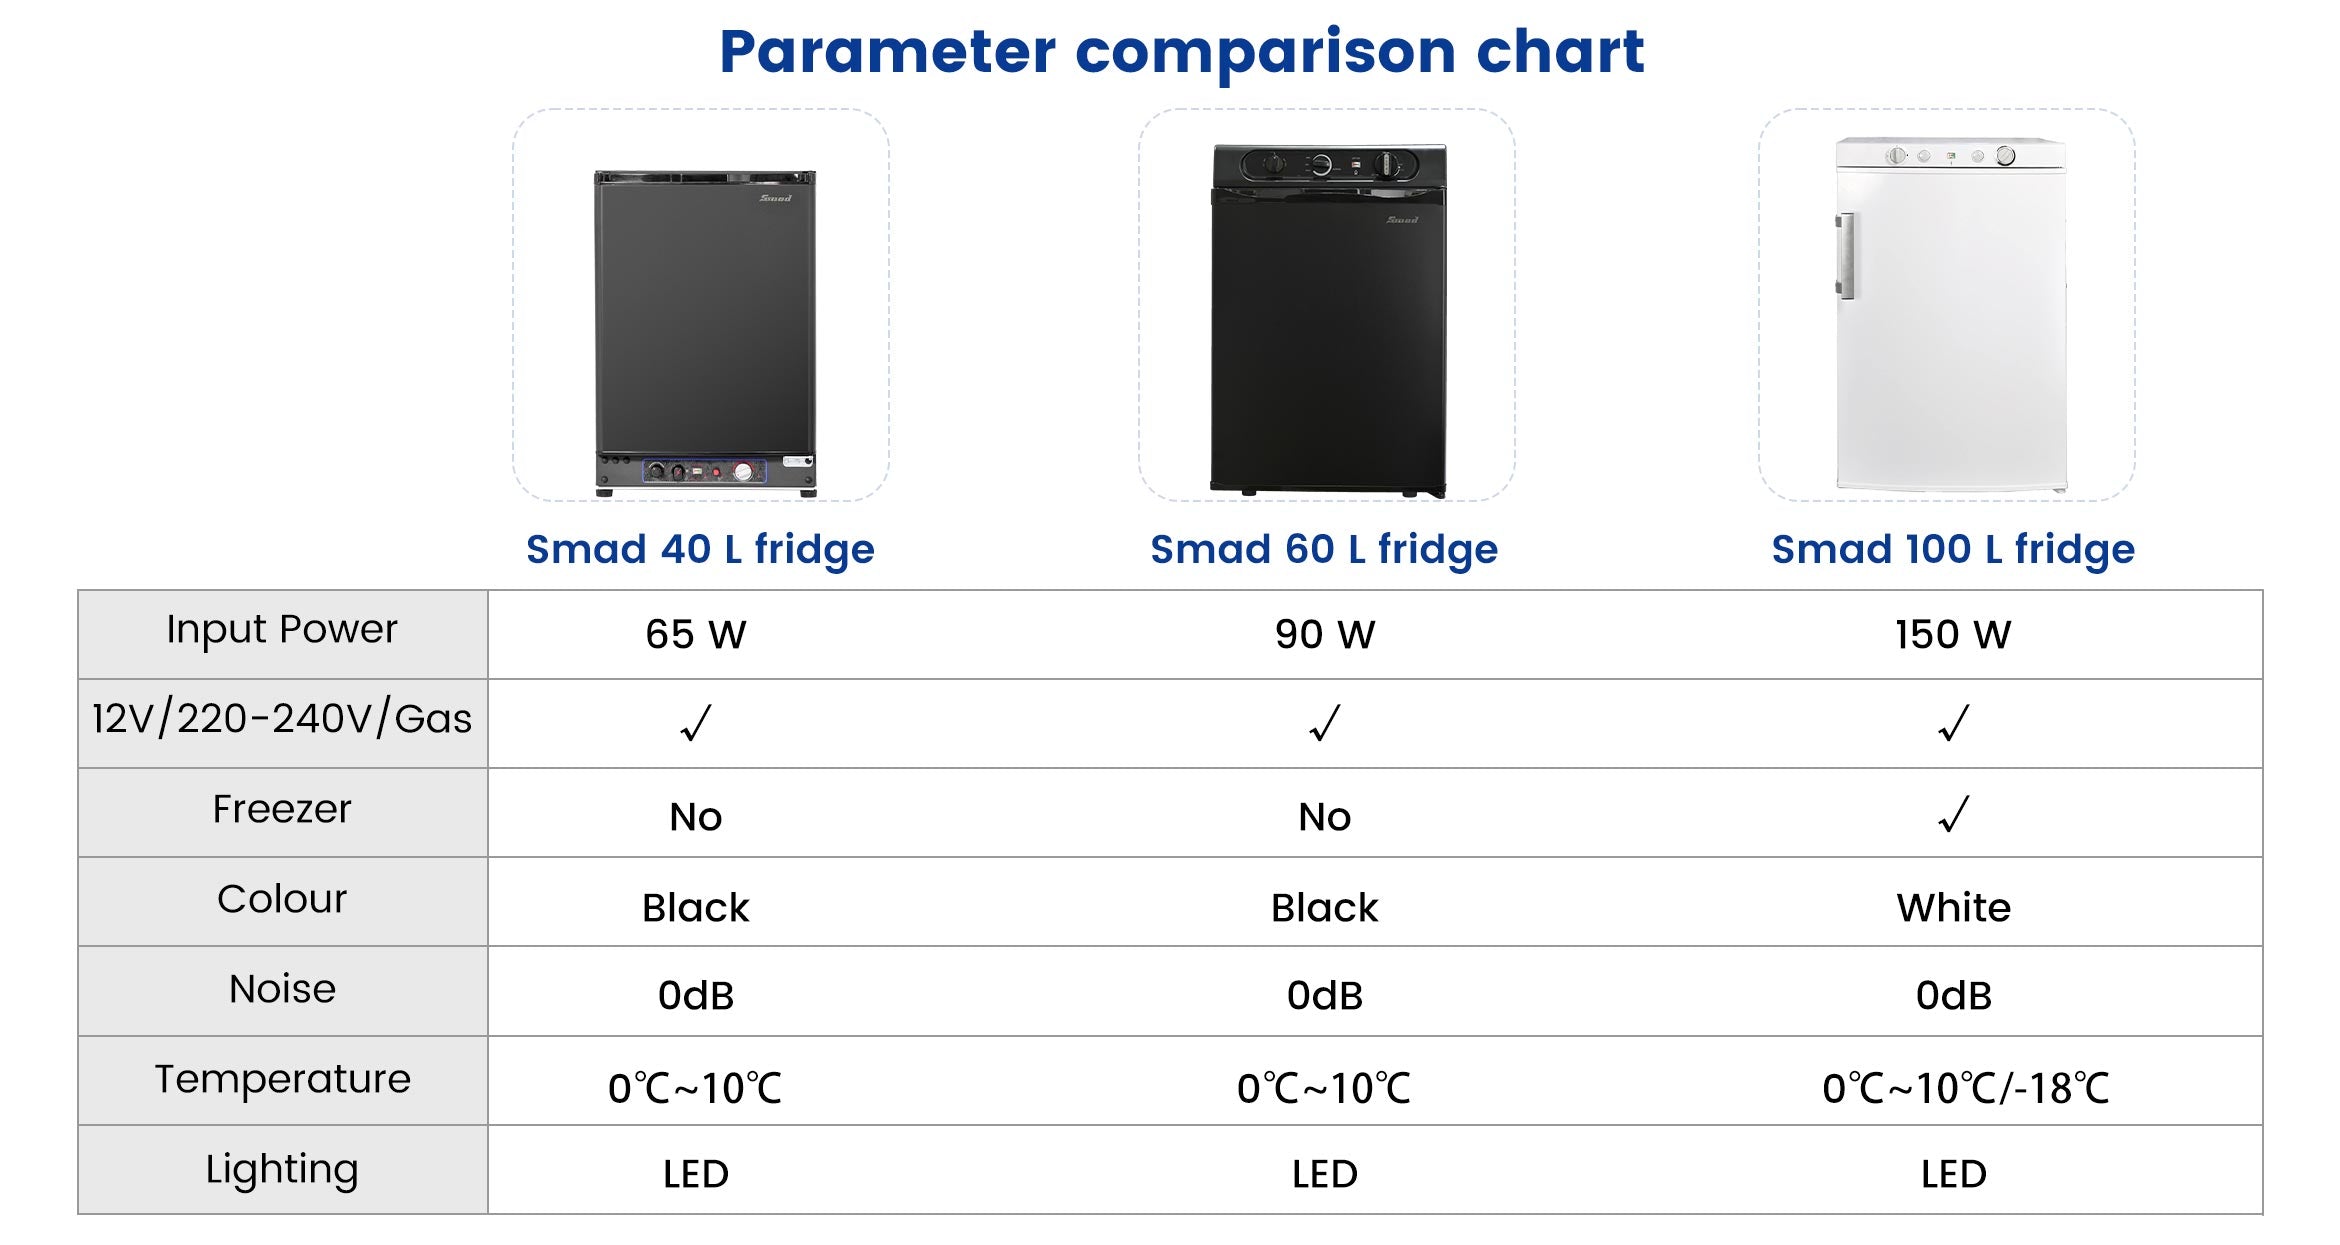 DSG-100L Parameter comparison chart